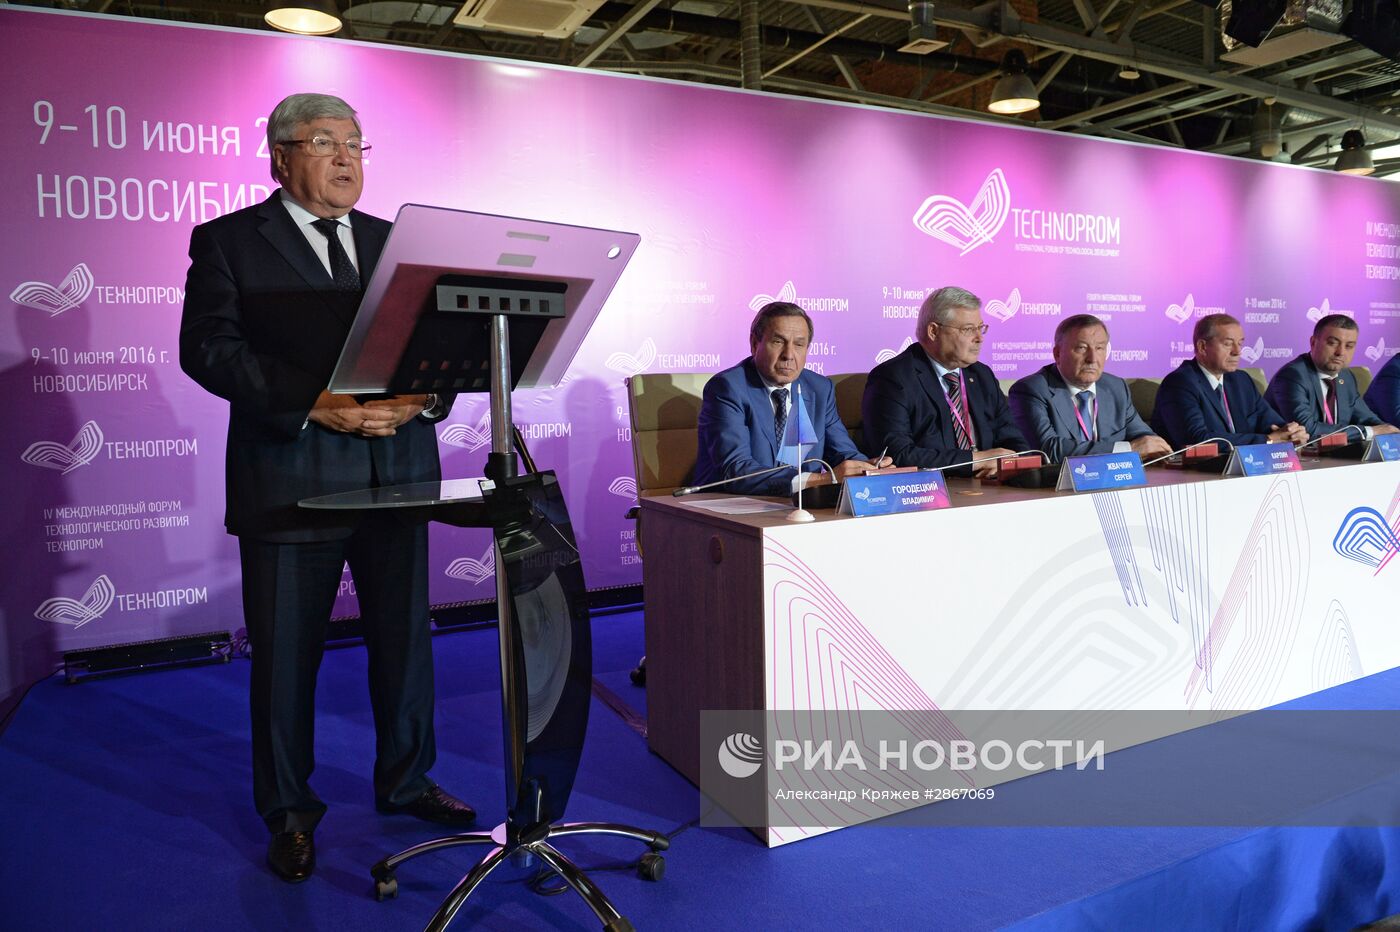 Международный форум технологического развития "Технопром-2016" в Новосибирске